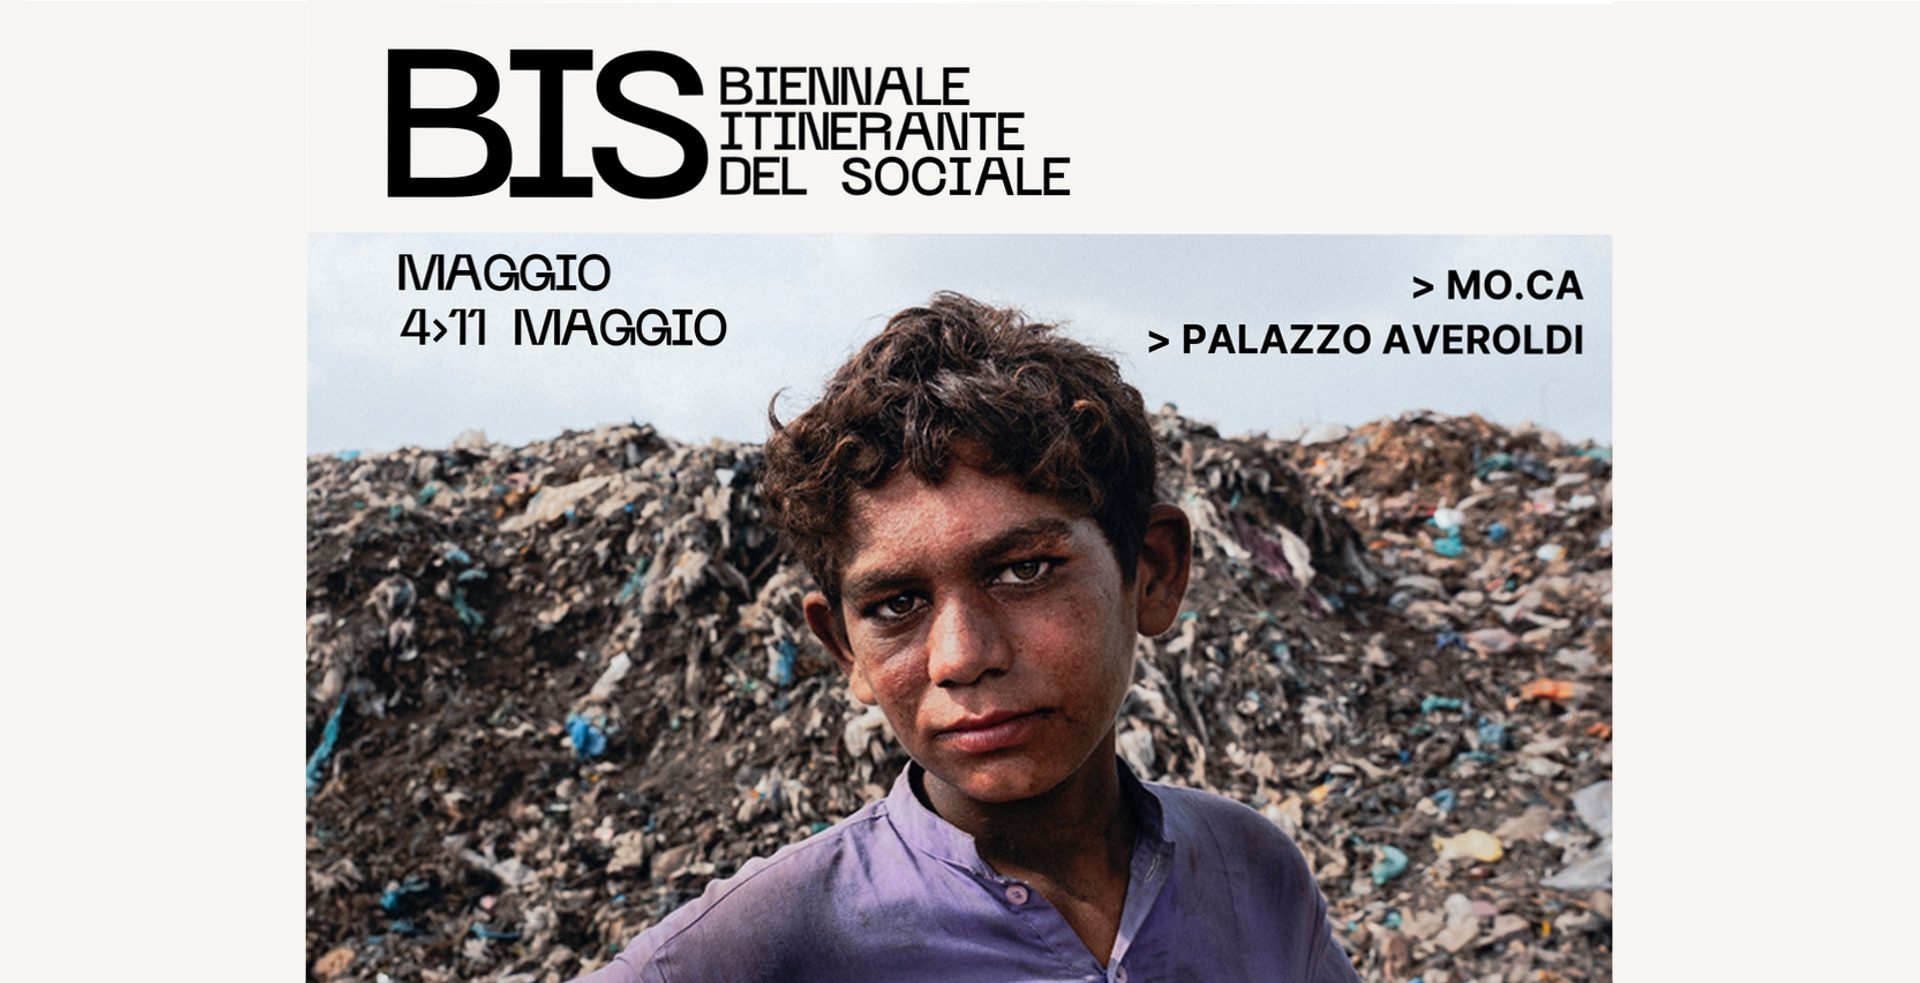 ZIMA è sponsor della BIS<br>biennale itinerante<br> del sociale